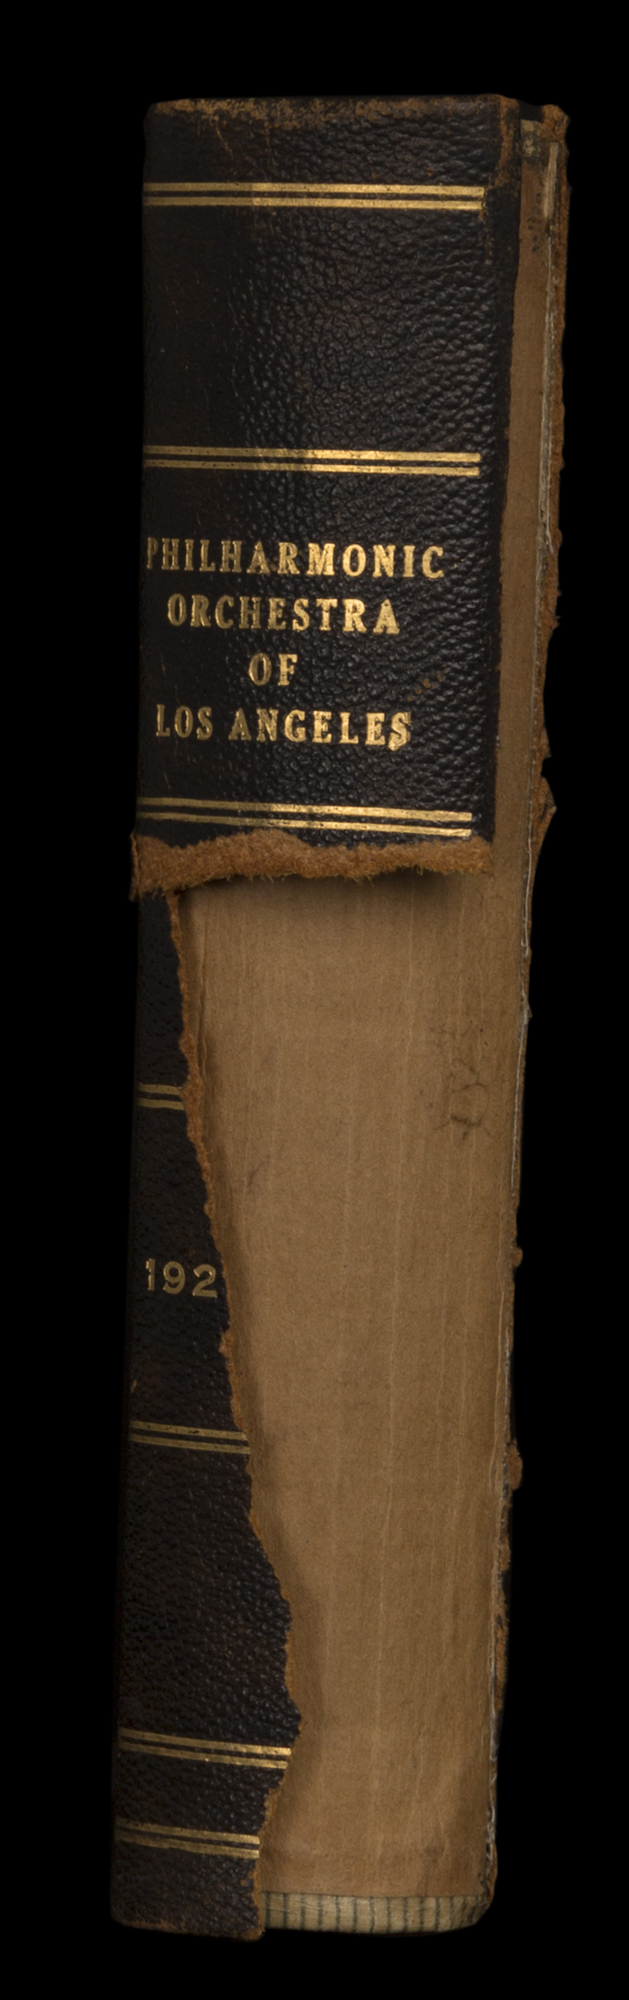 LAPO_ProgramBook_Spine_1927-1928.jpg